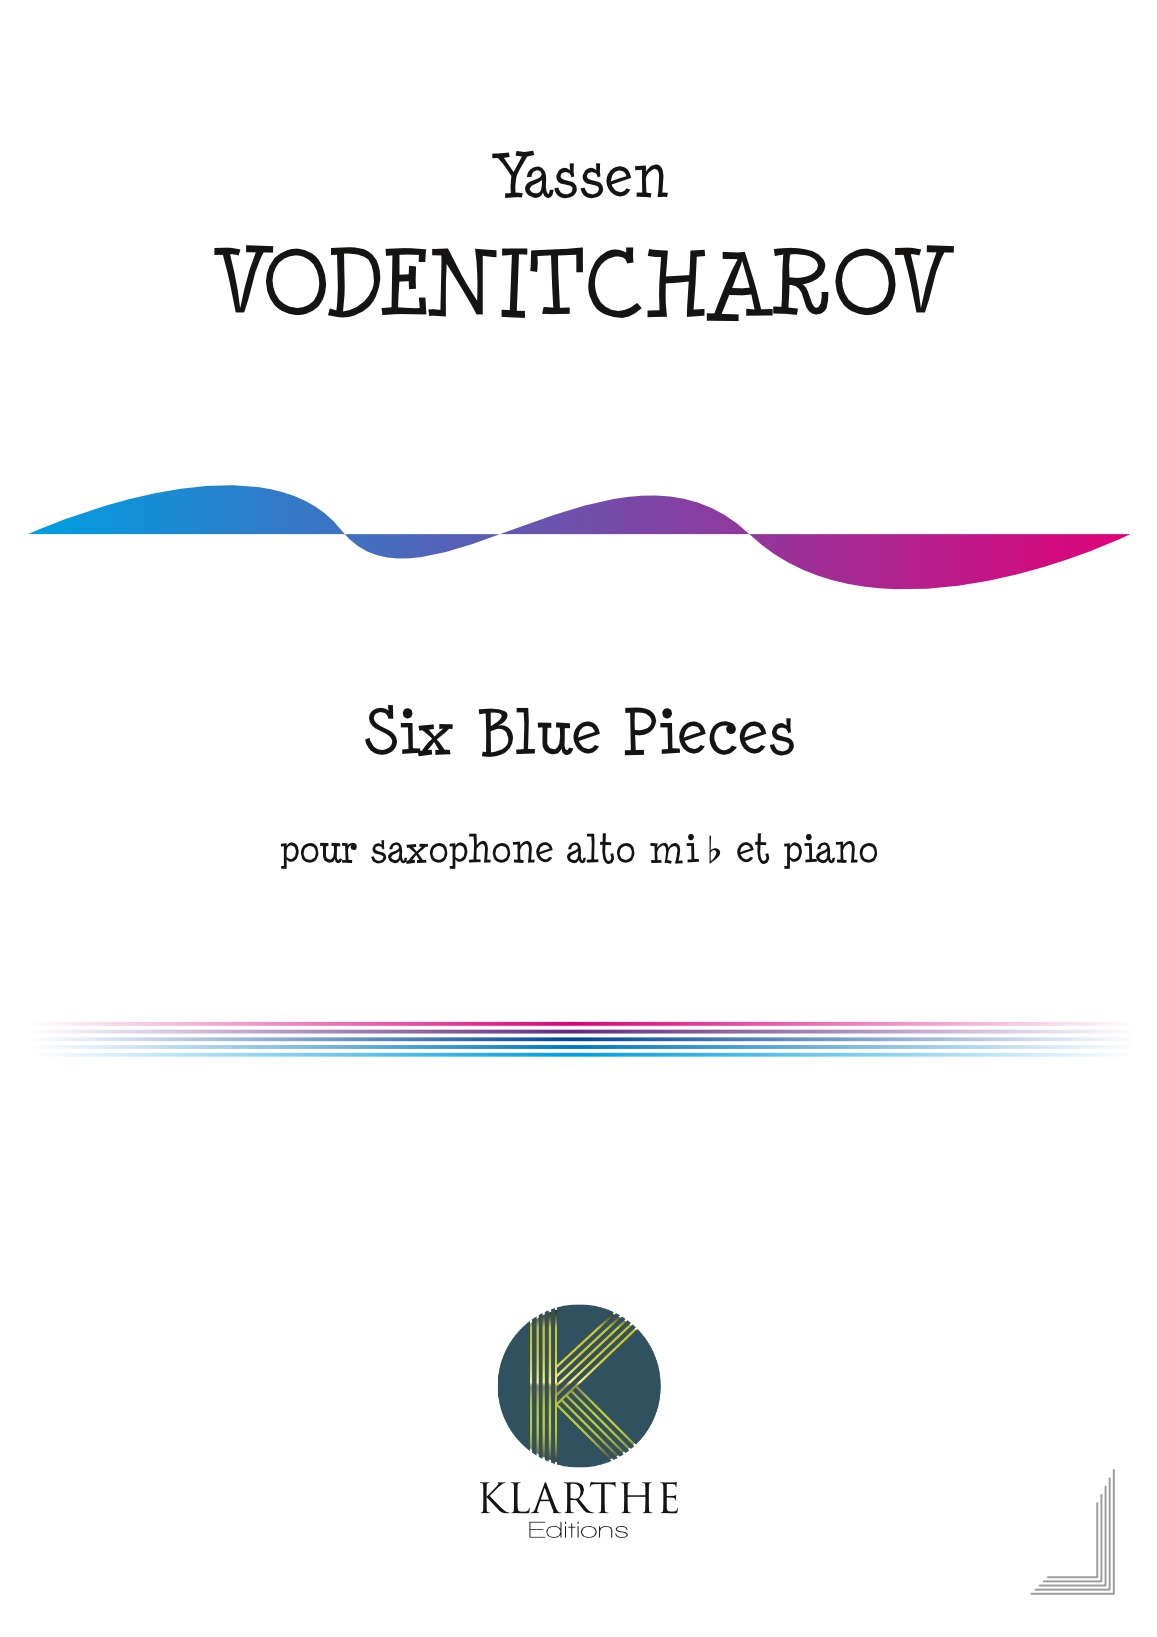 Six Blue Pieces (VODENITCHAROV YASSEN)